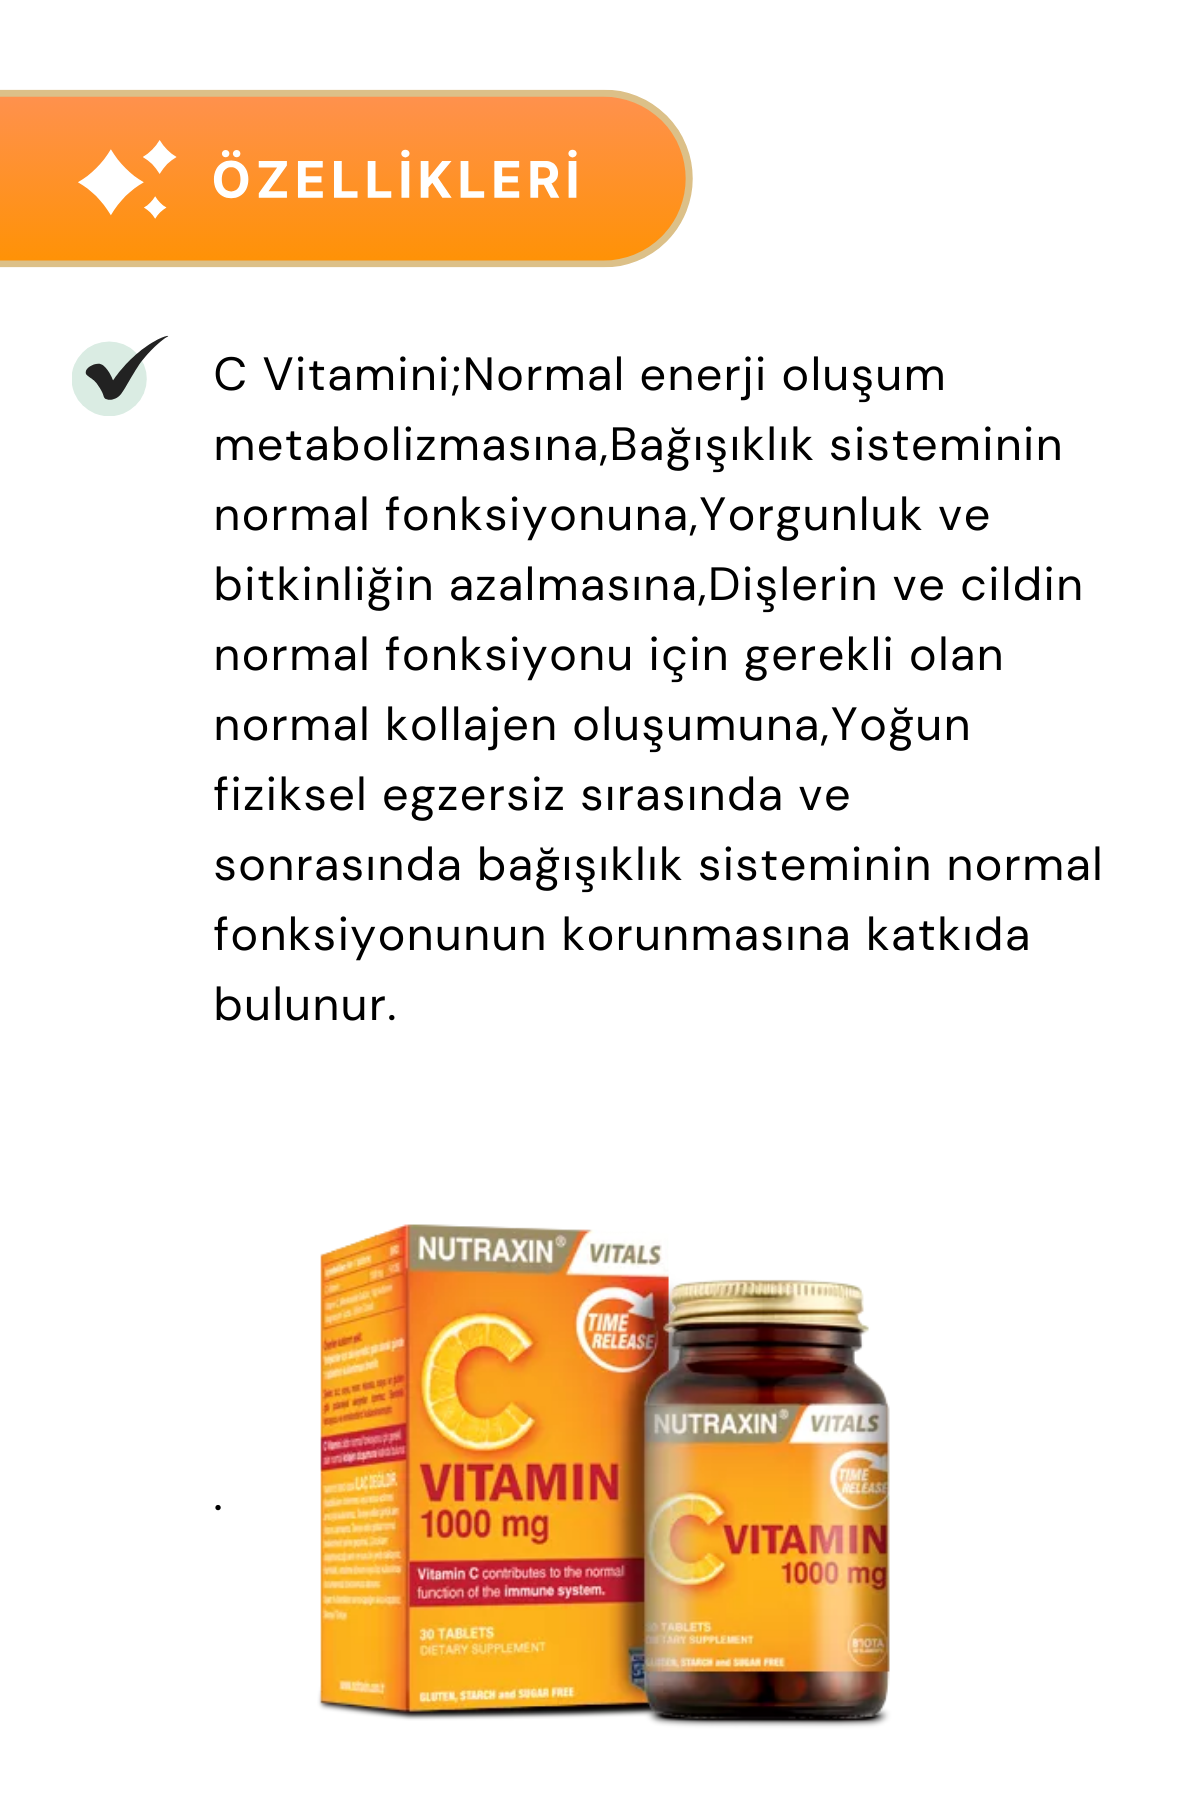 Nutraxin C Vitamin 1000 mg 30 Tablet 3'lü Paket